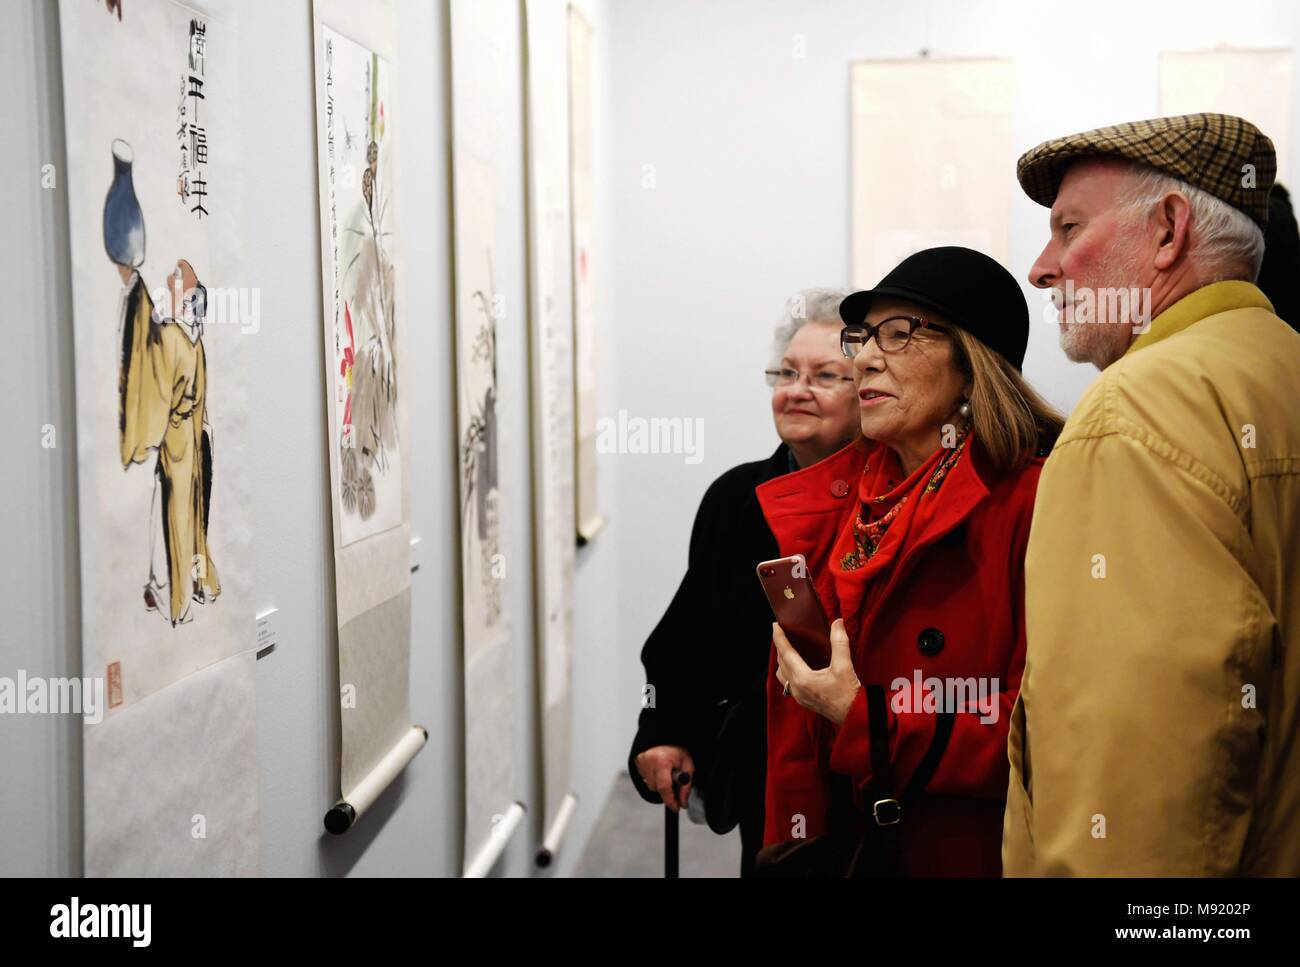 Malaga, Spagna. 20 Mar, 2018. I visitatori osservano le opere dell artista cinese Qi Baishi durante una mostra a Malaga, Spagna, il 20 marzo 2018. Credito: Guo Qiuda/Xinhua/Alamy Live News Foto Stock